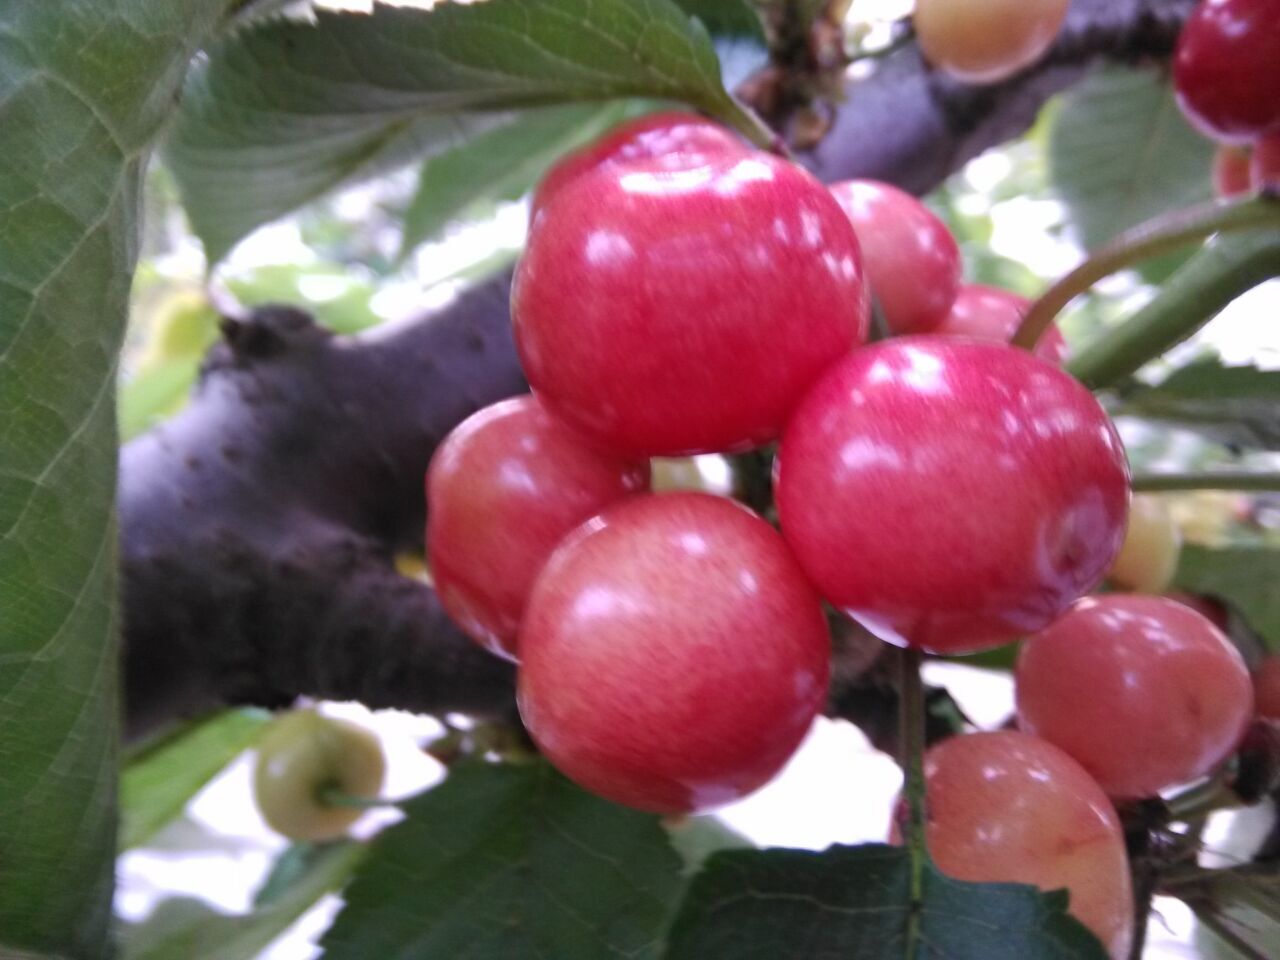 烟台樱桃主要产自哪个区:福山区樱桃为主